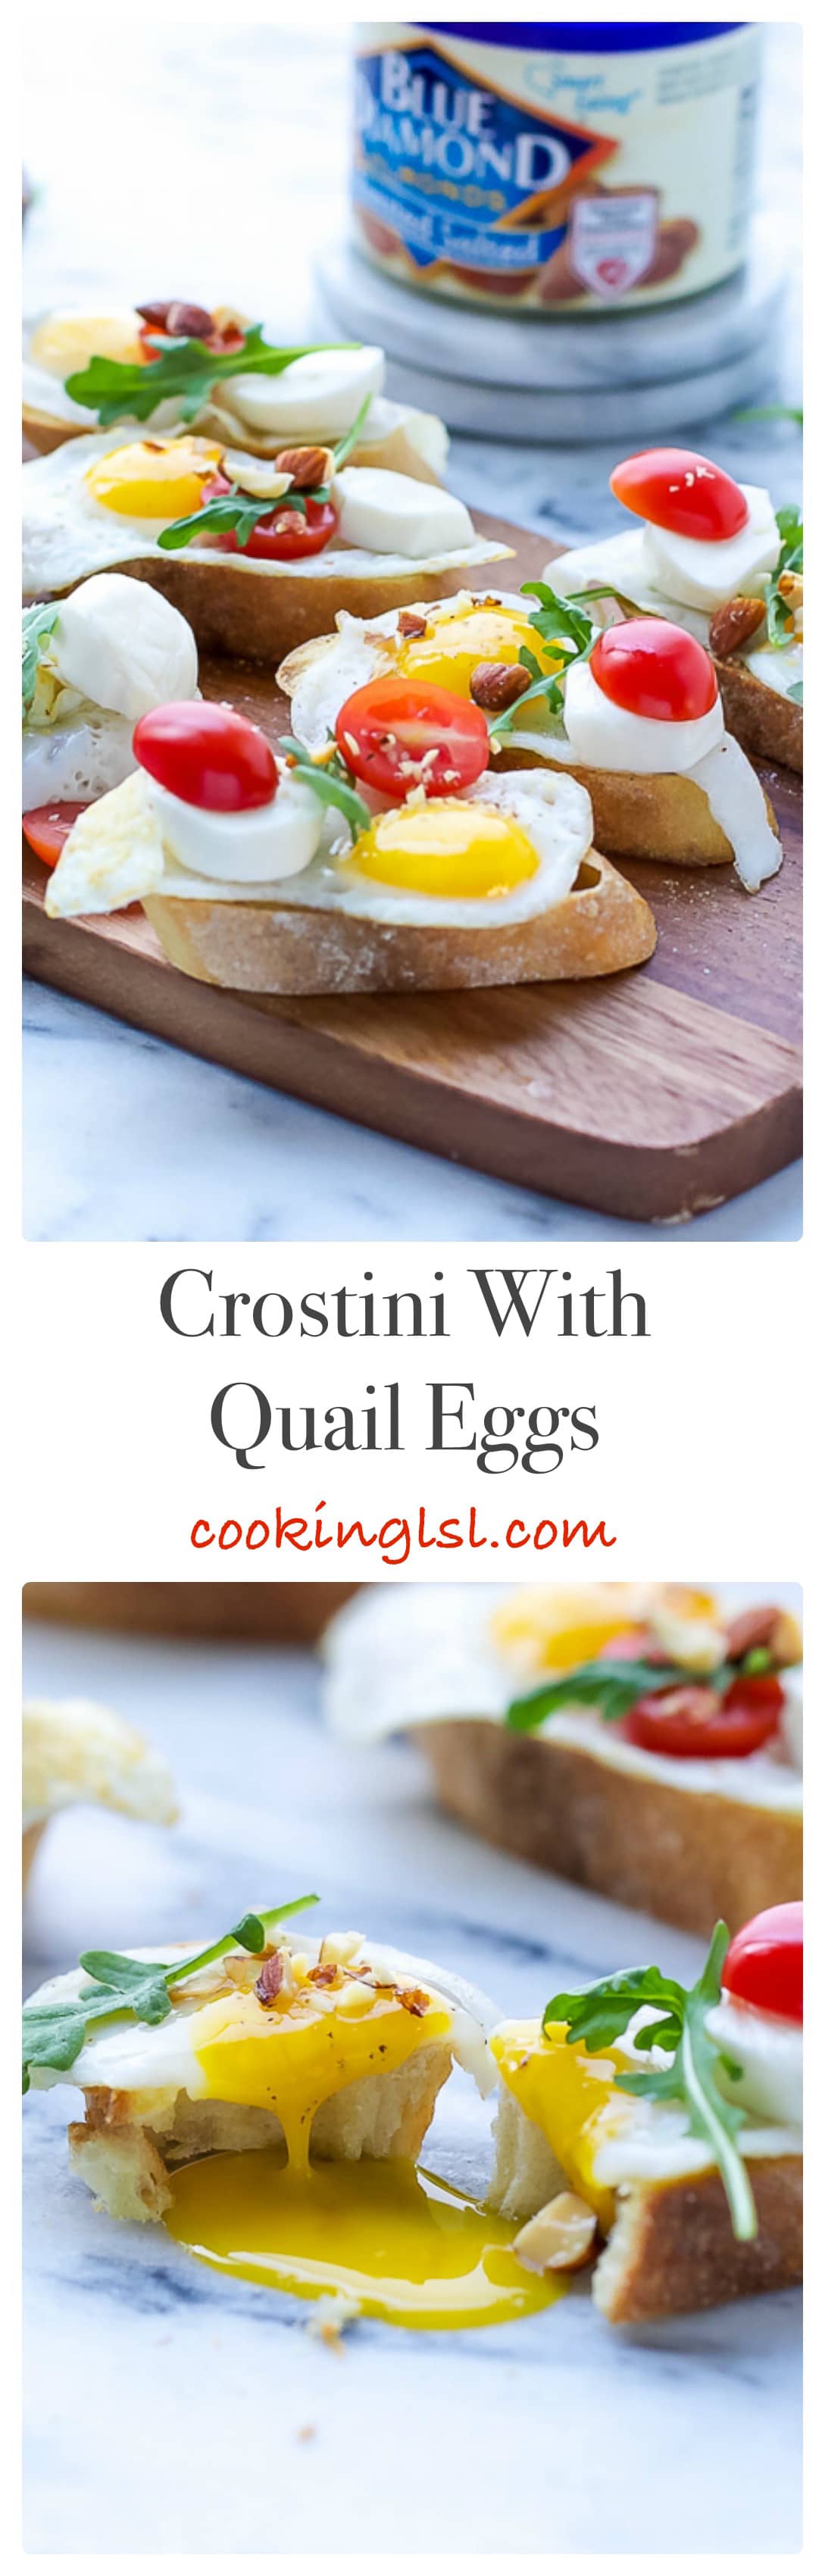 quail-eggs-crostini-recipe